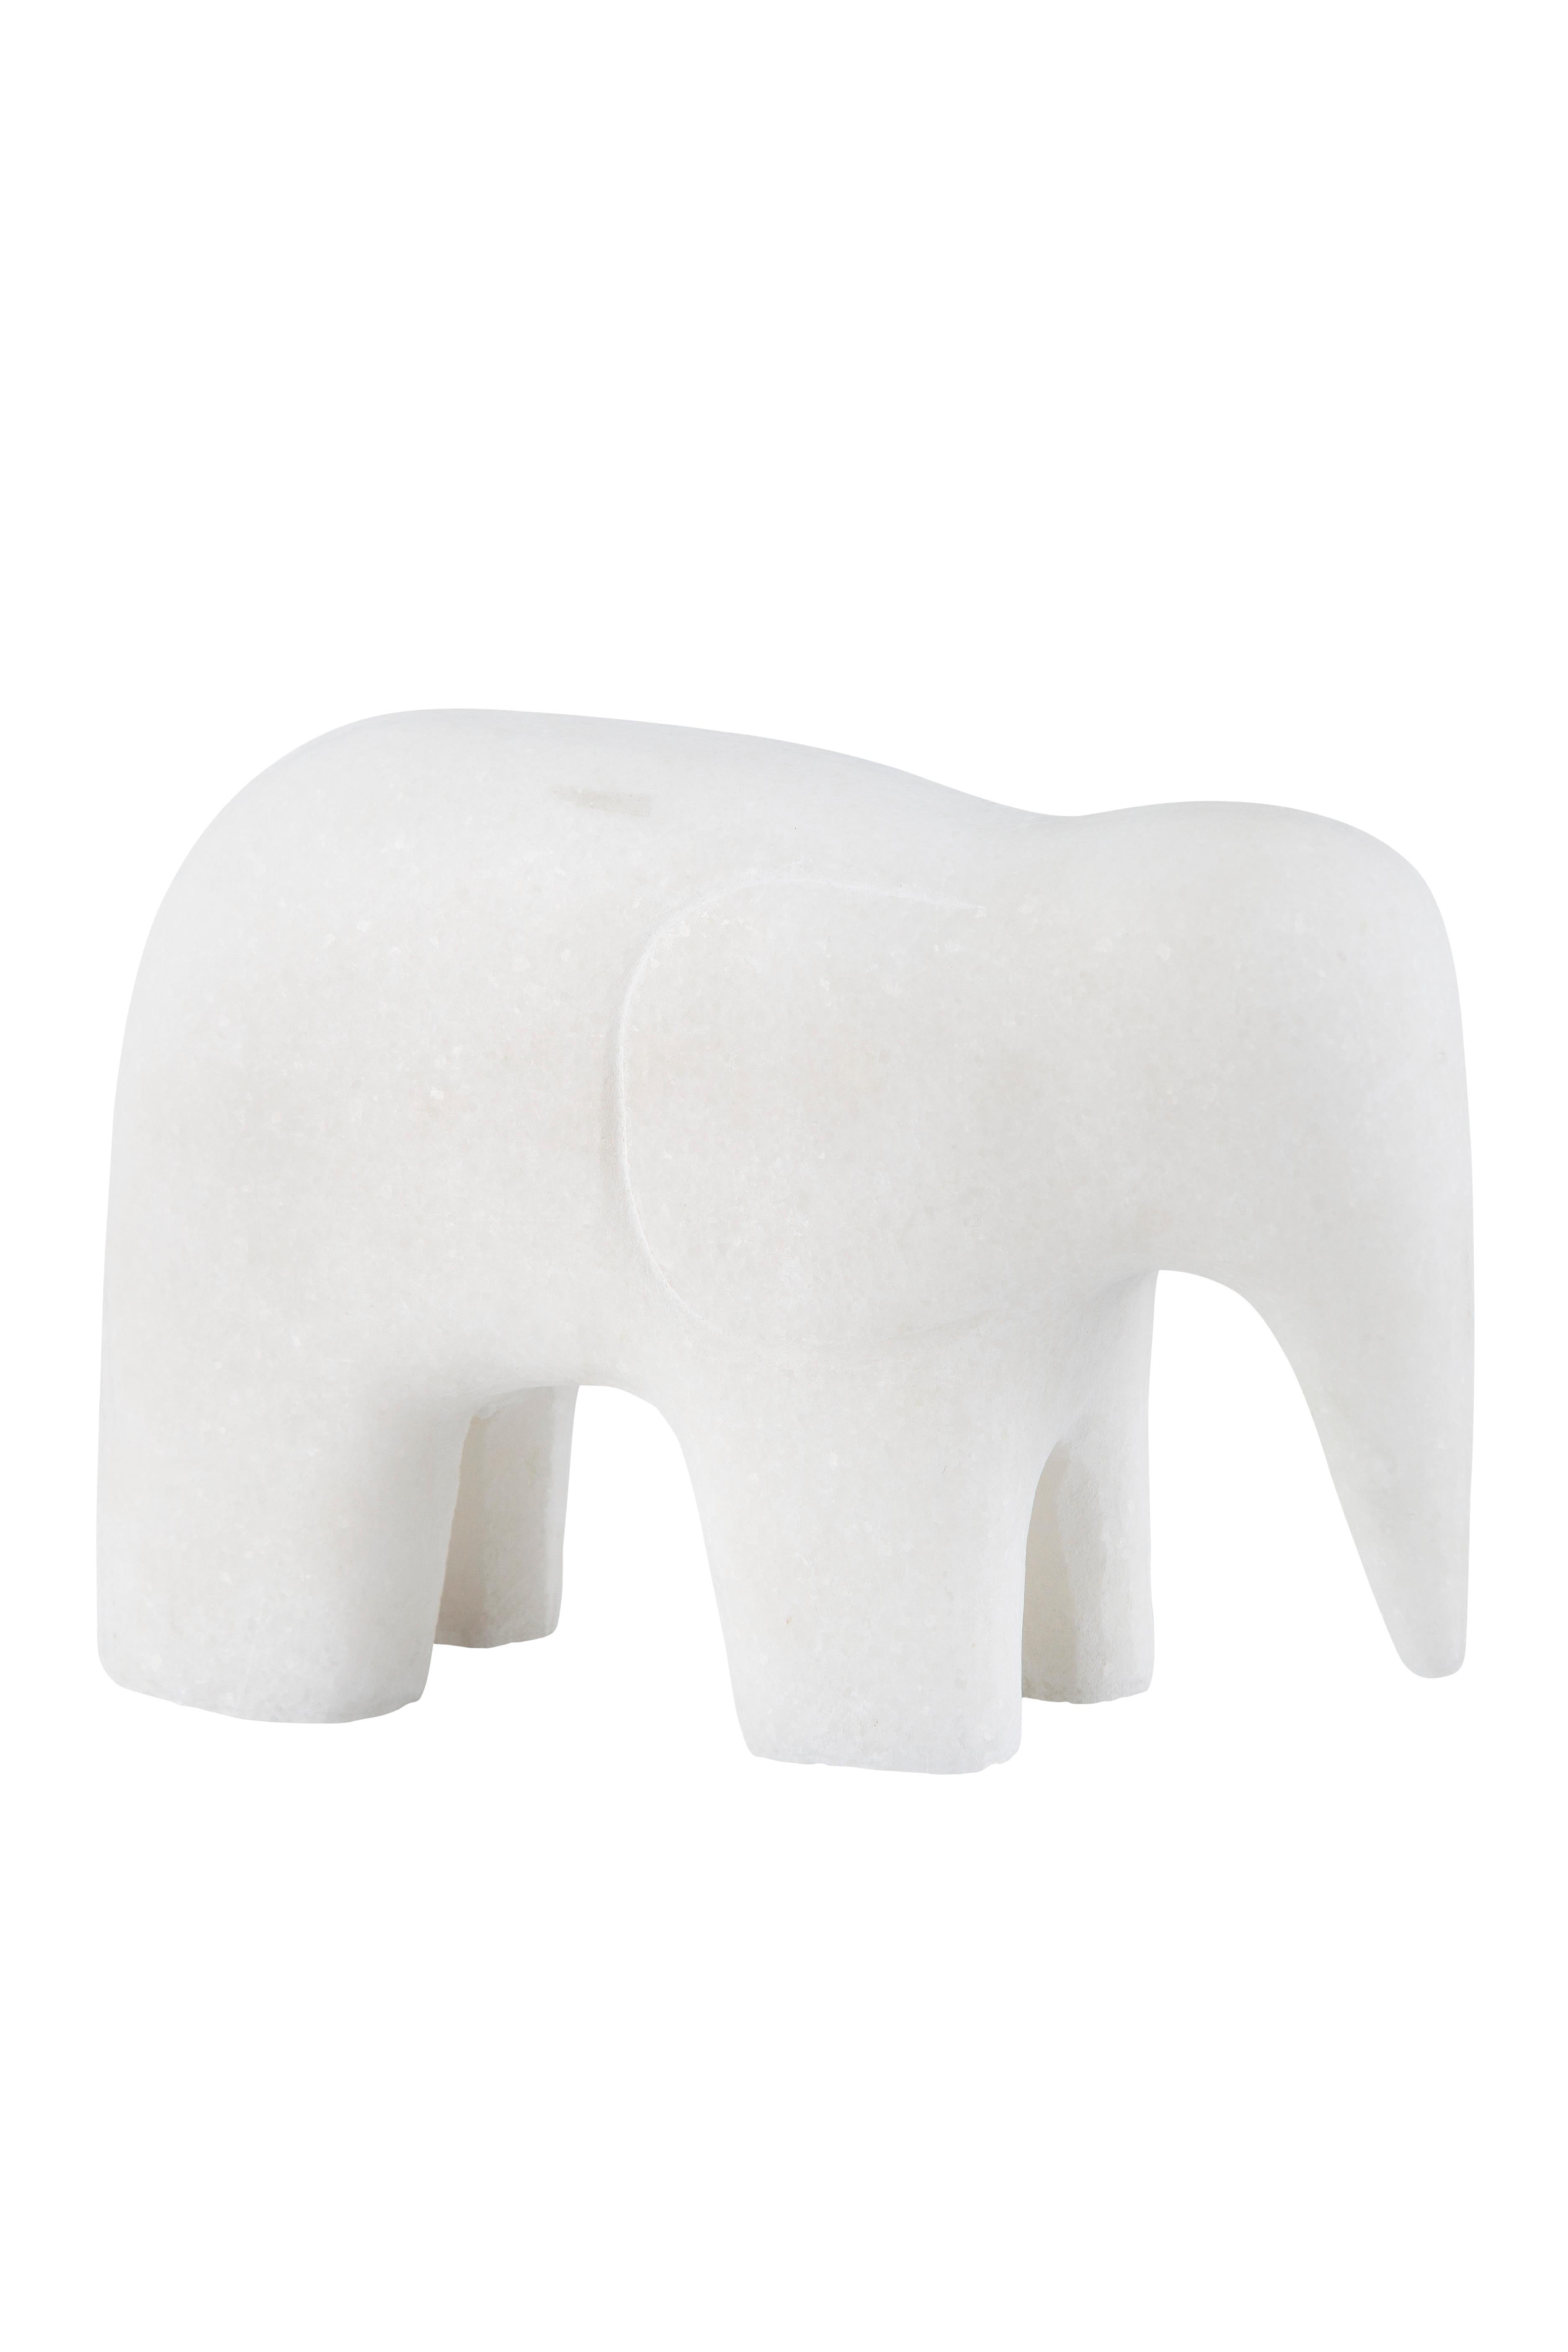 Ensemble/3 Animals, marbre Calacatta Bianco, fabriqué à la main par Lusitanus Home en vente 4